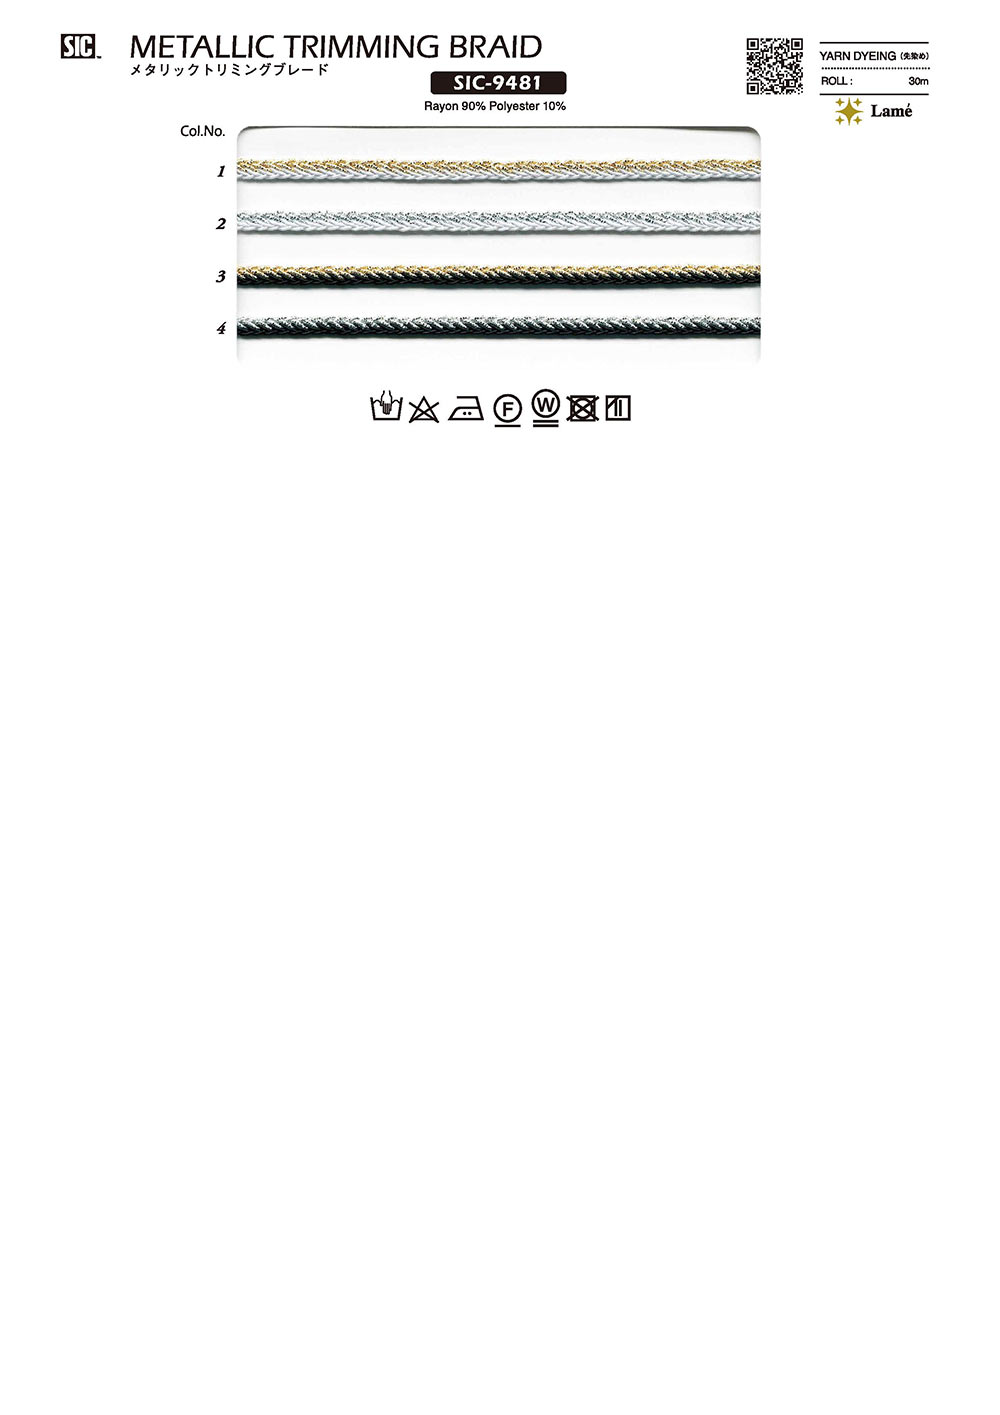 SIC-9481 Metallic Trimming Braid[Ribbon Tape Cord] SHINDO(SIC)